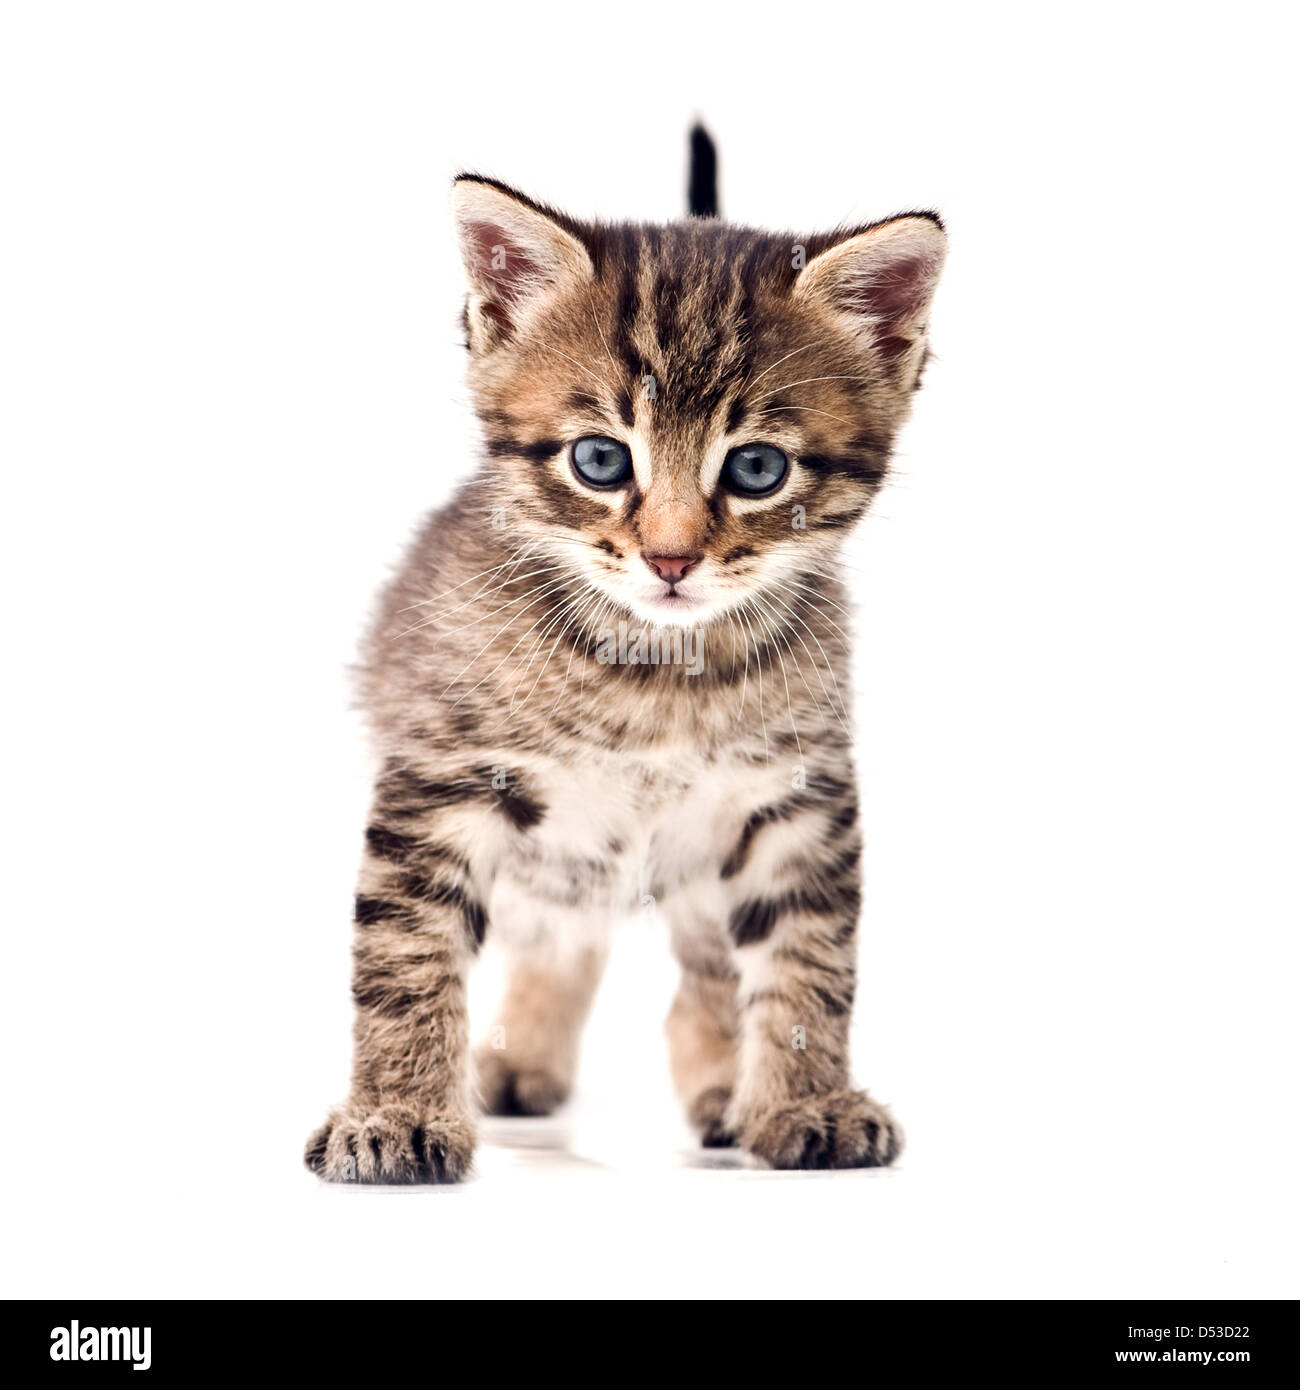 Striped kitten isolati su sfondo bianco Foto Stock